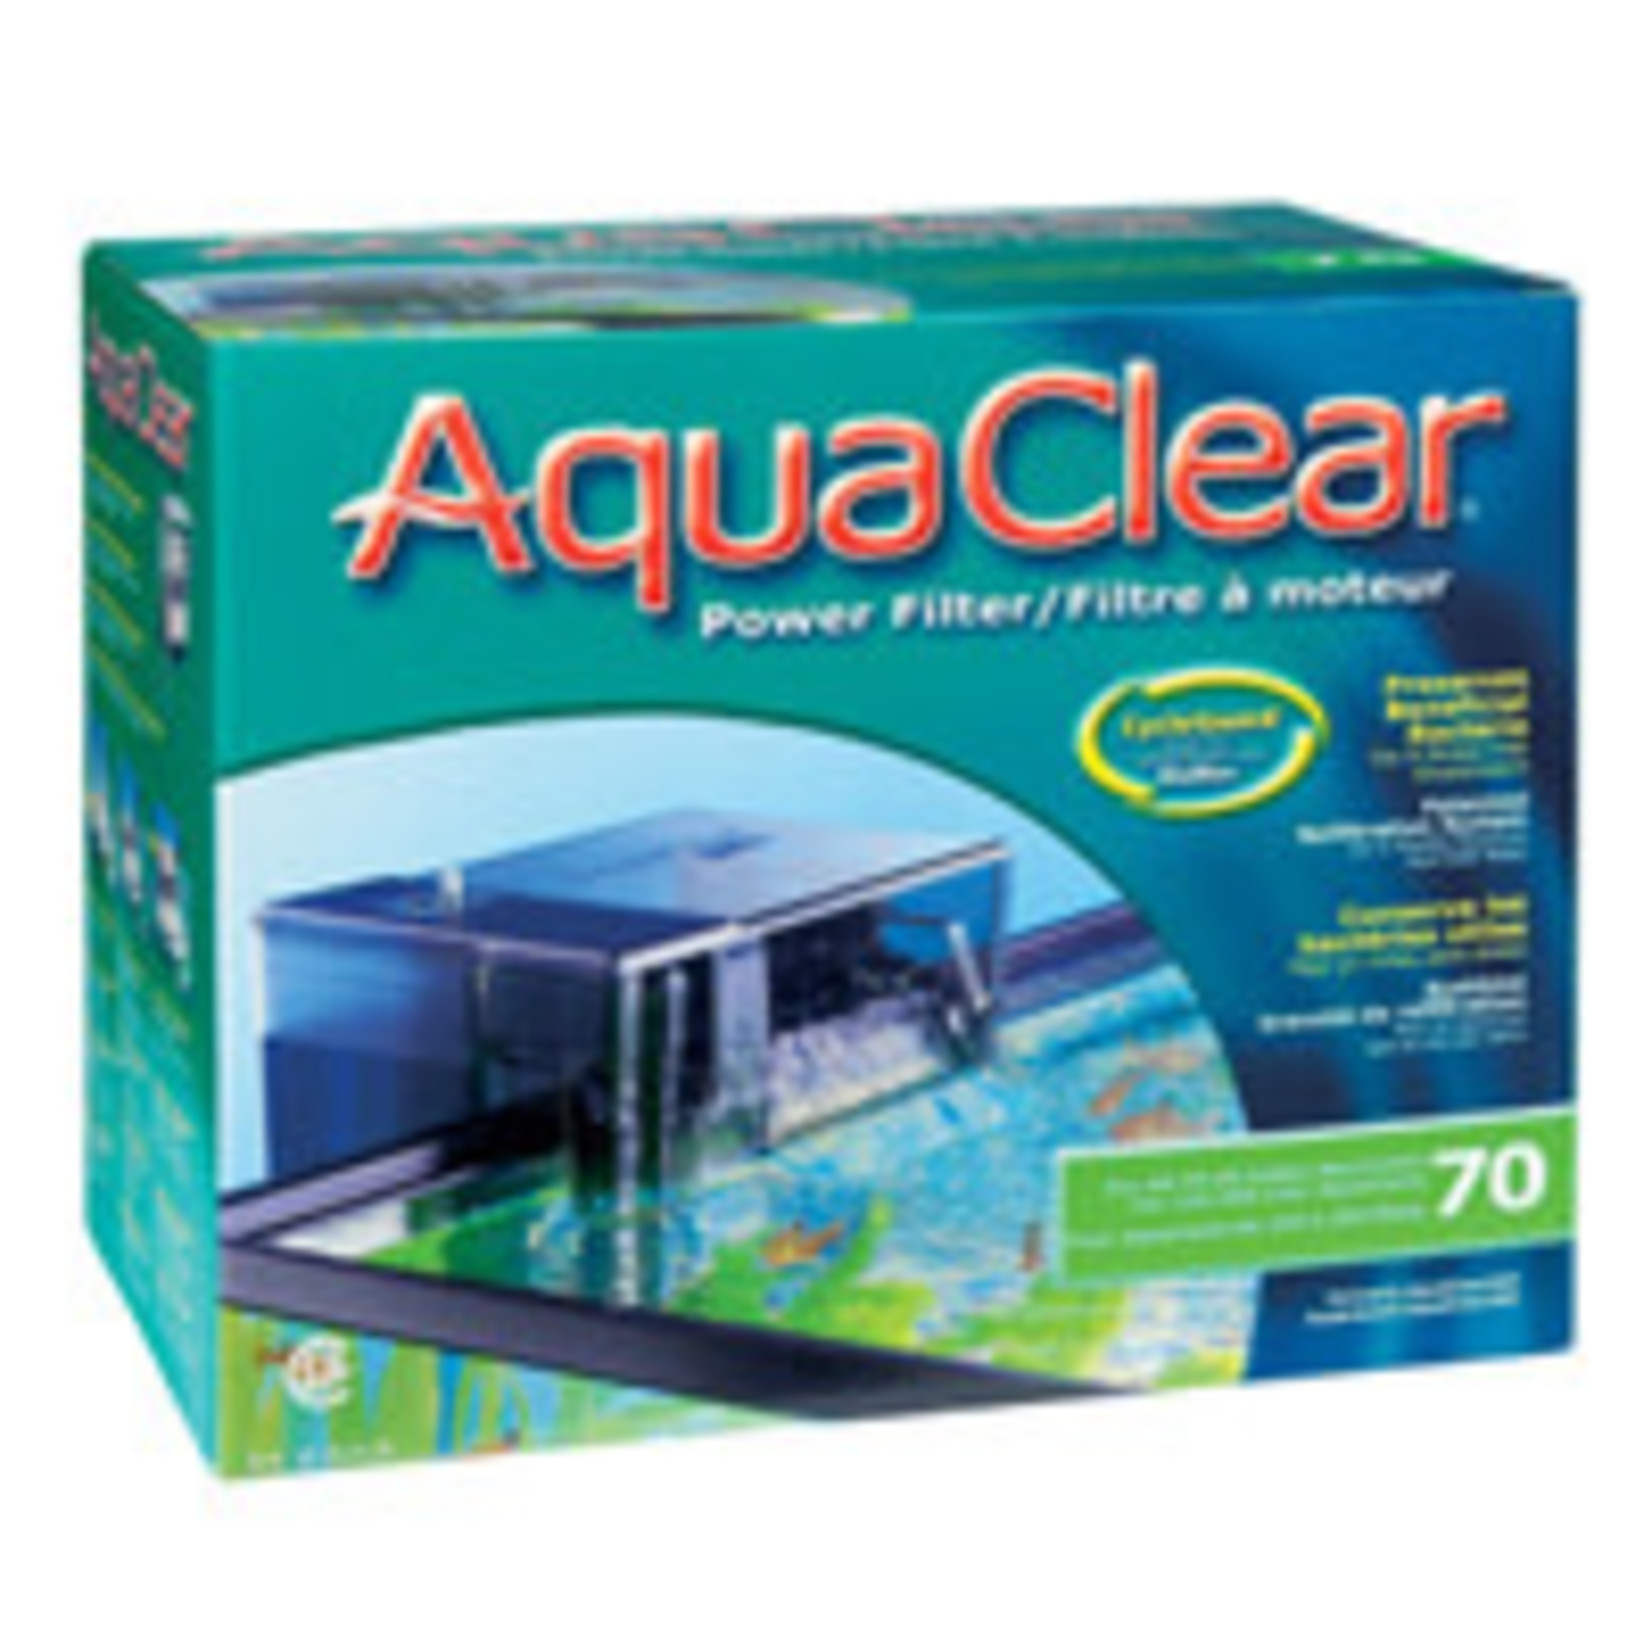 AquaClear Aqua Clear 70 (300) Filter w/ Media